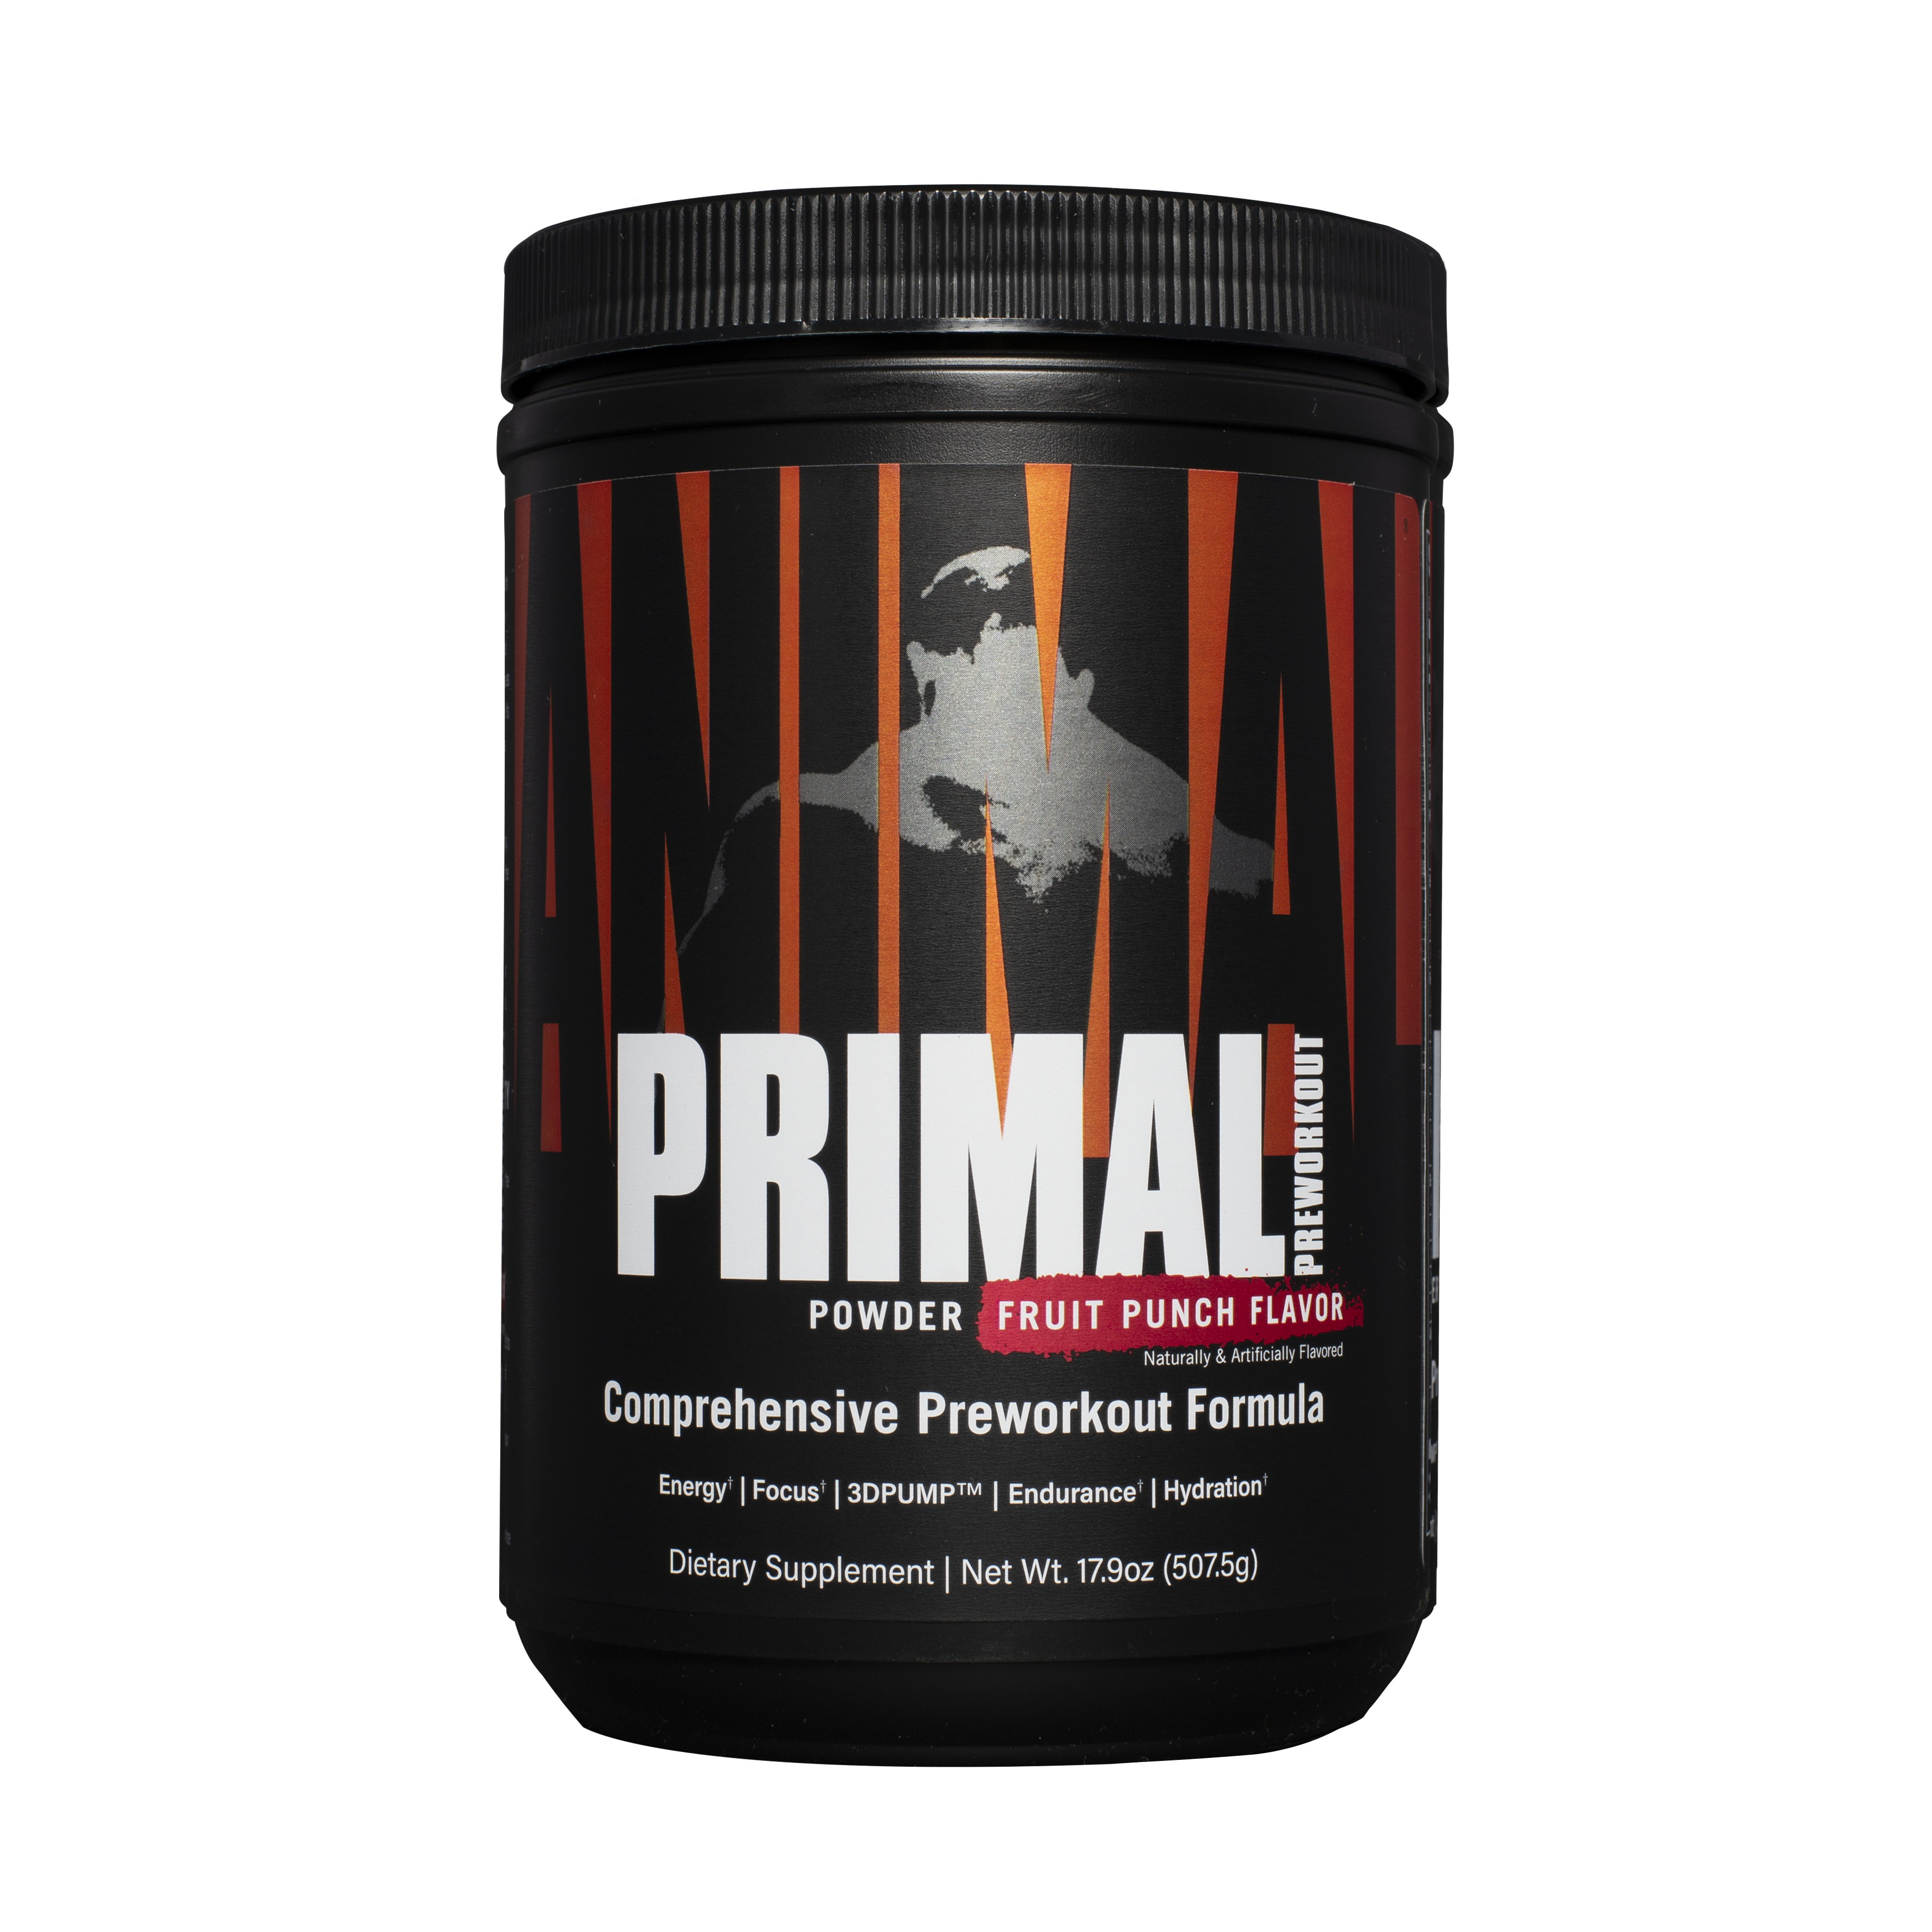 Animal Primal powder